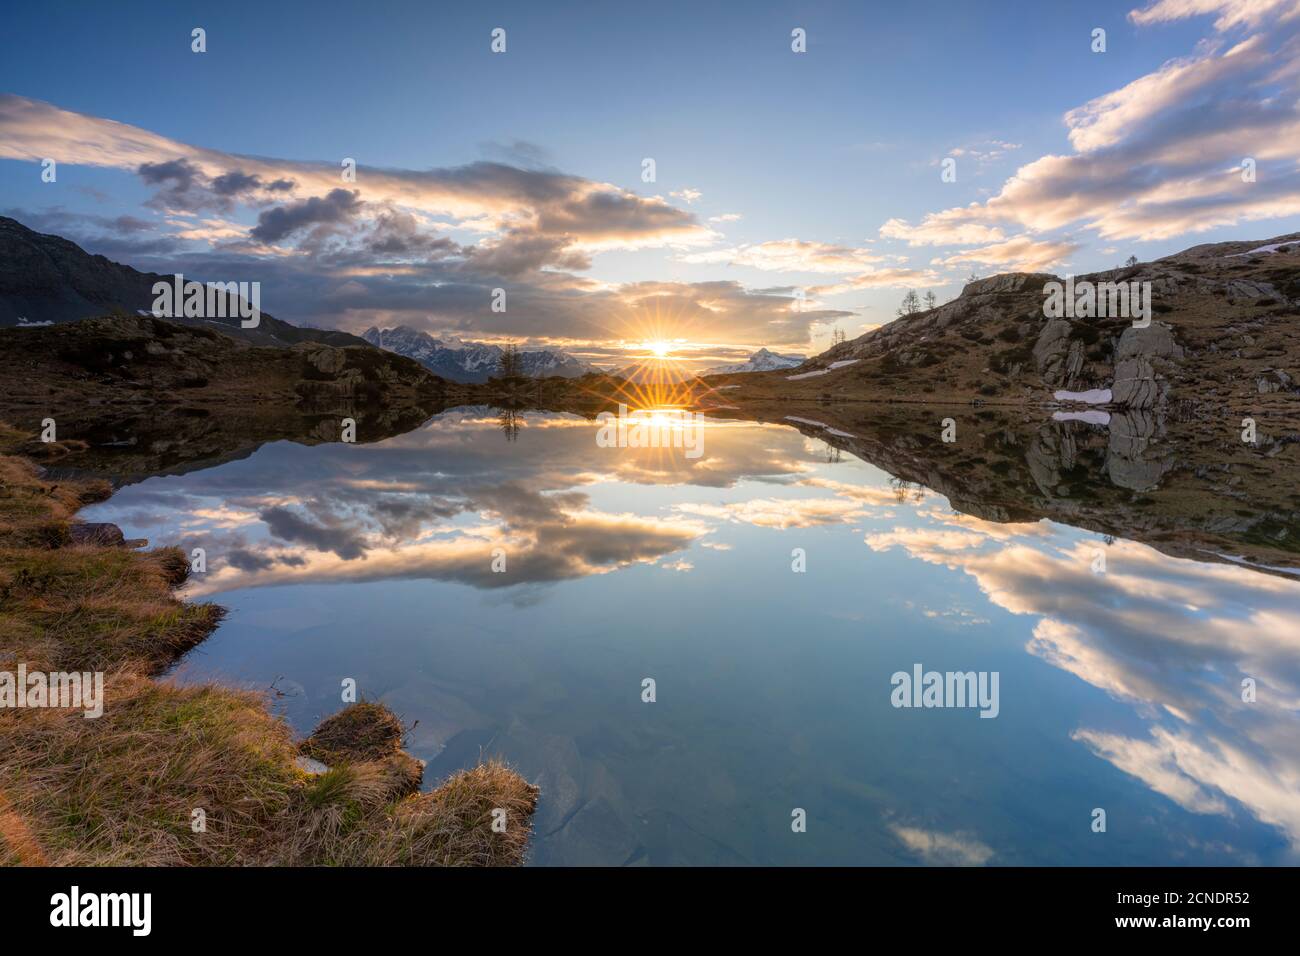 Sunburst sulle acque limpide del lago Zana durante l'alba, Valmalenco, provincia di Sondrio, Valtellina, Lombardia, Italia, Europa Foto Stock